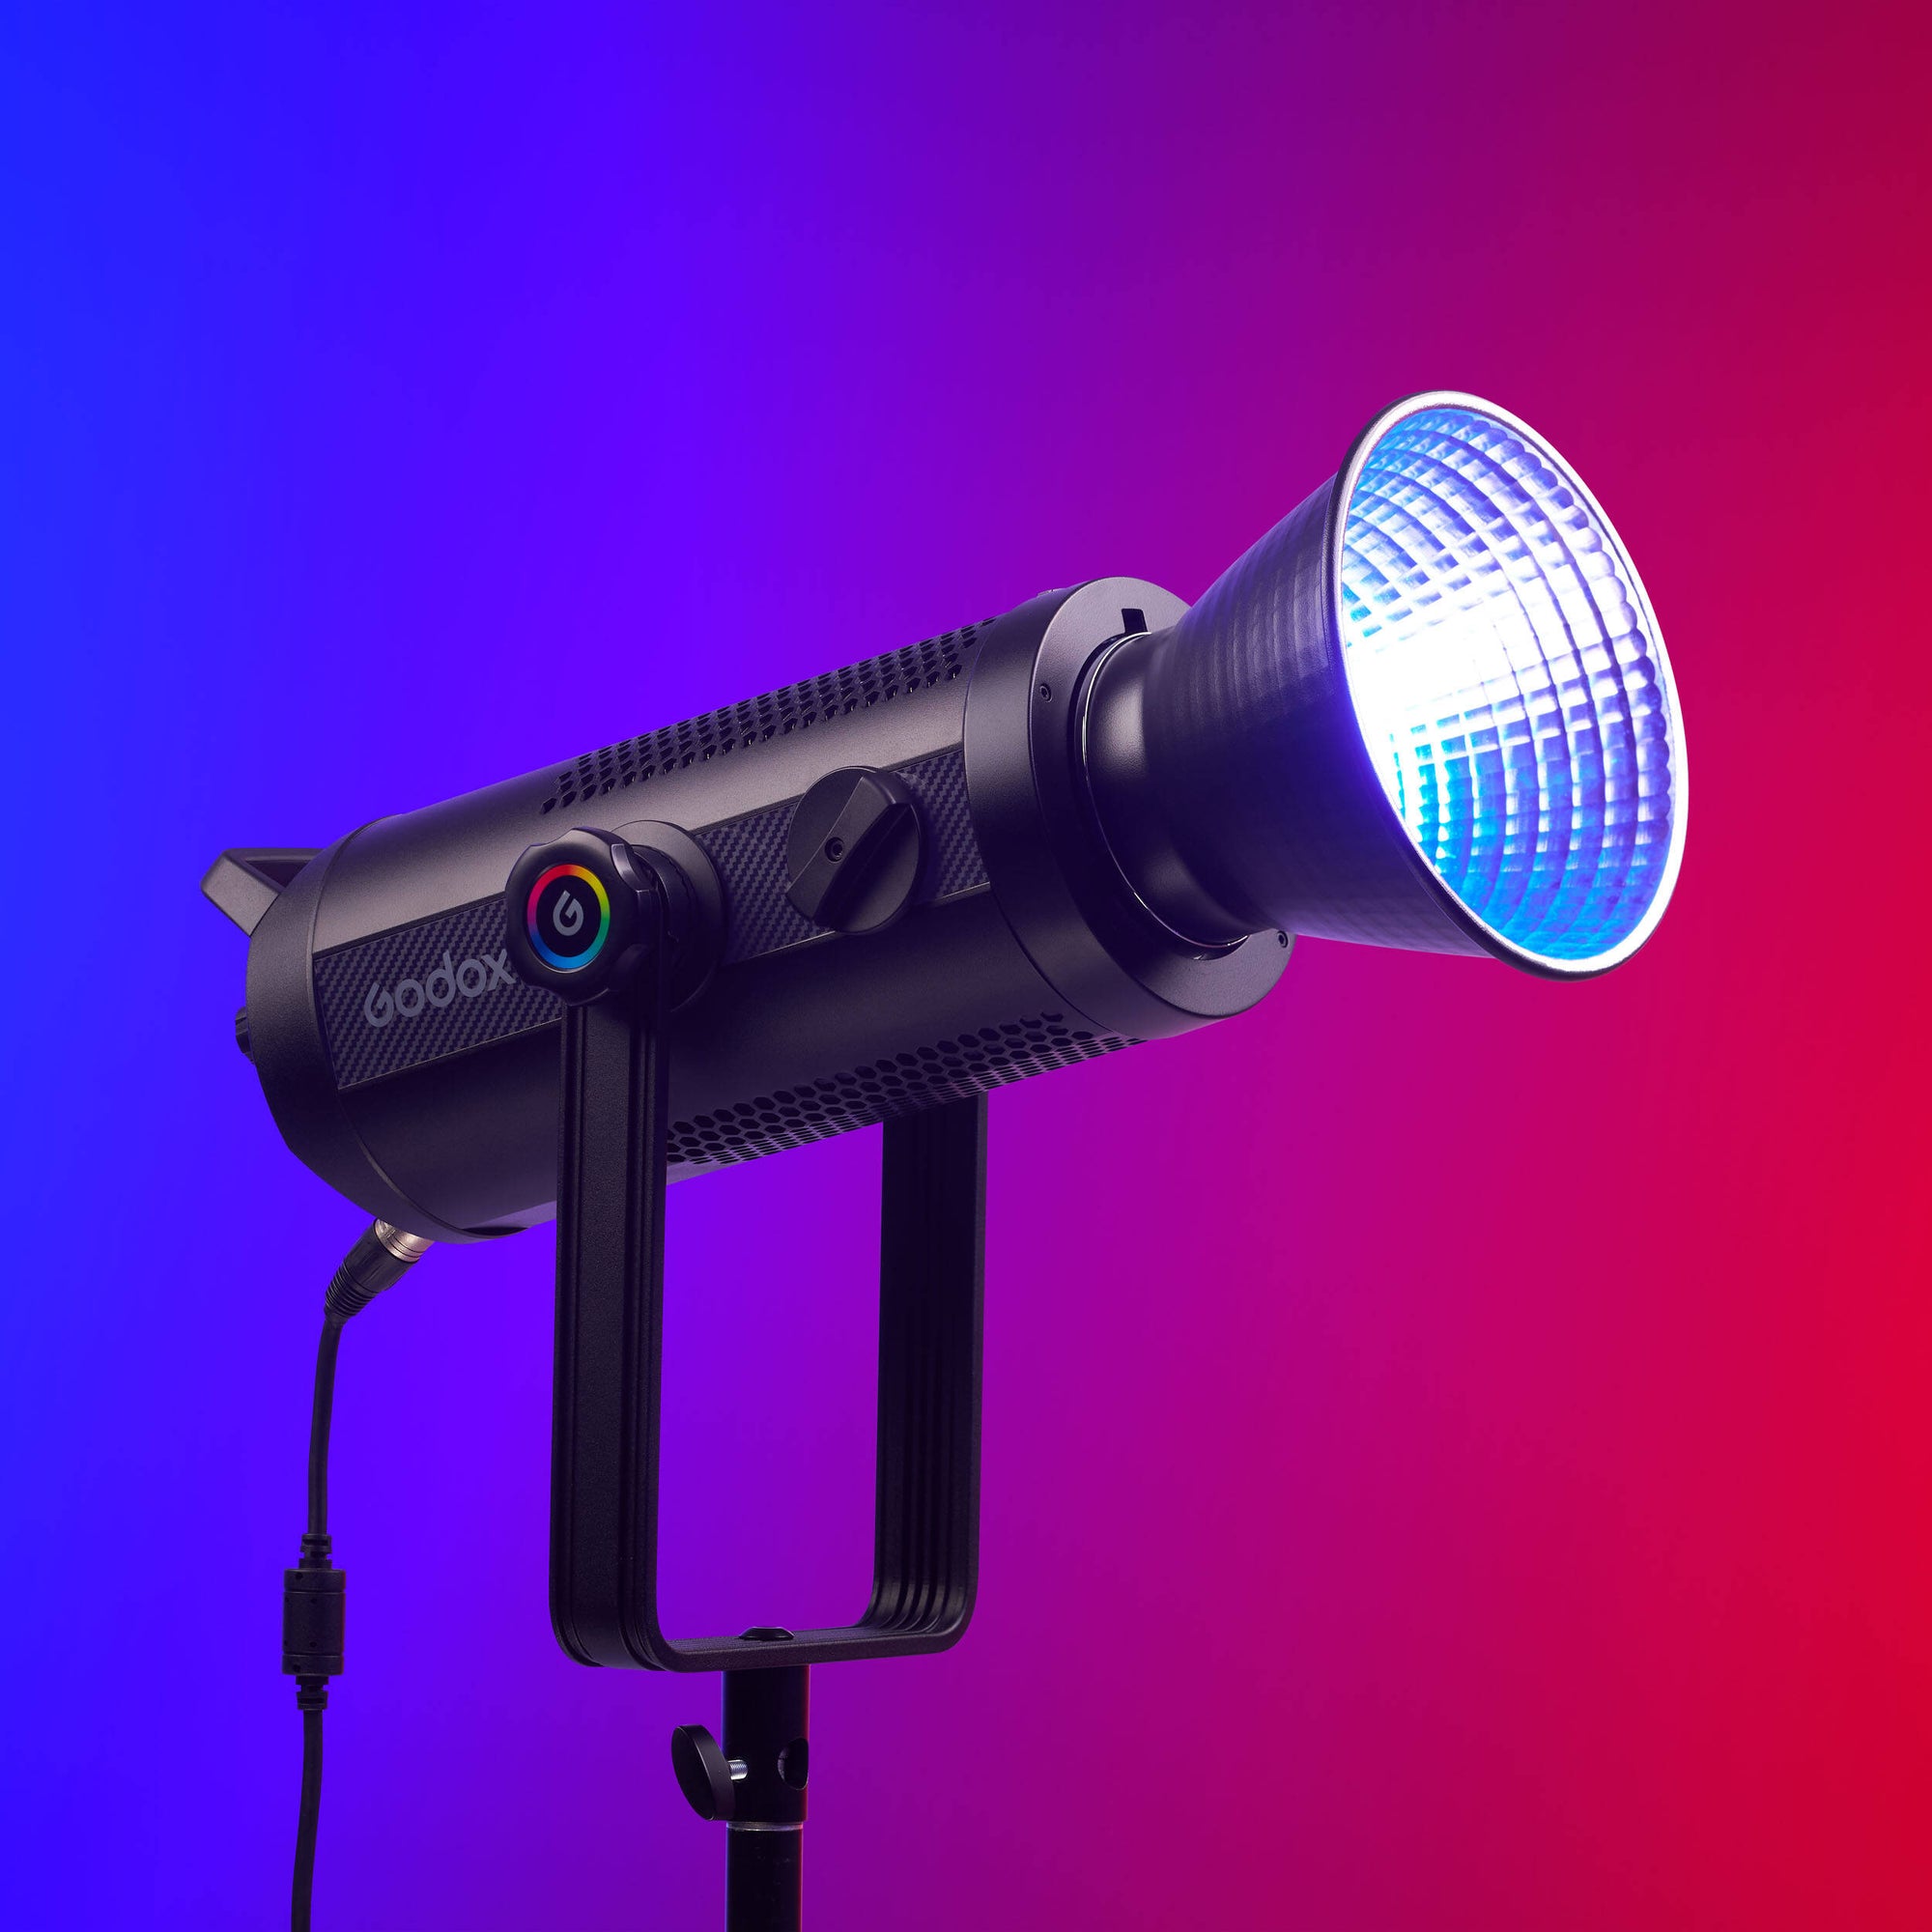 Godox SZ300R RGB Zoom LED Light